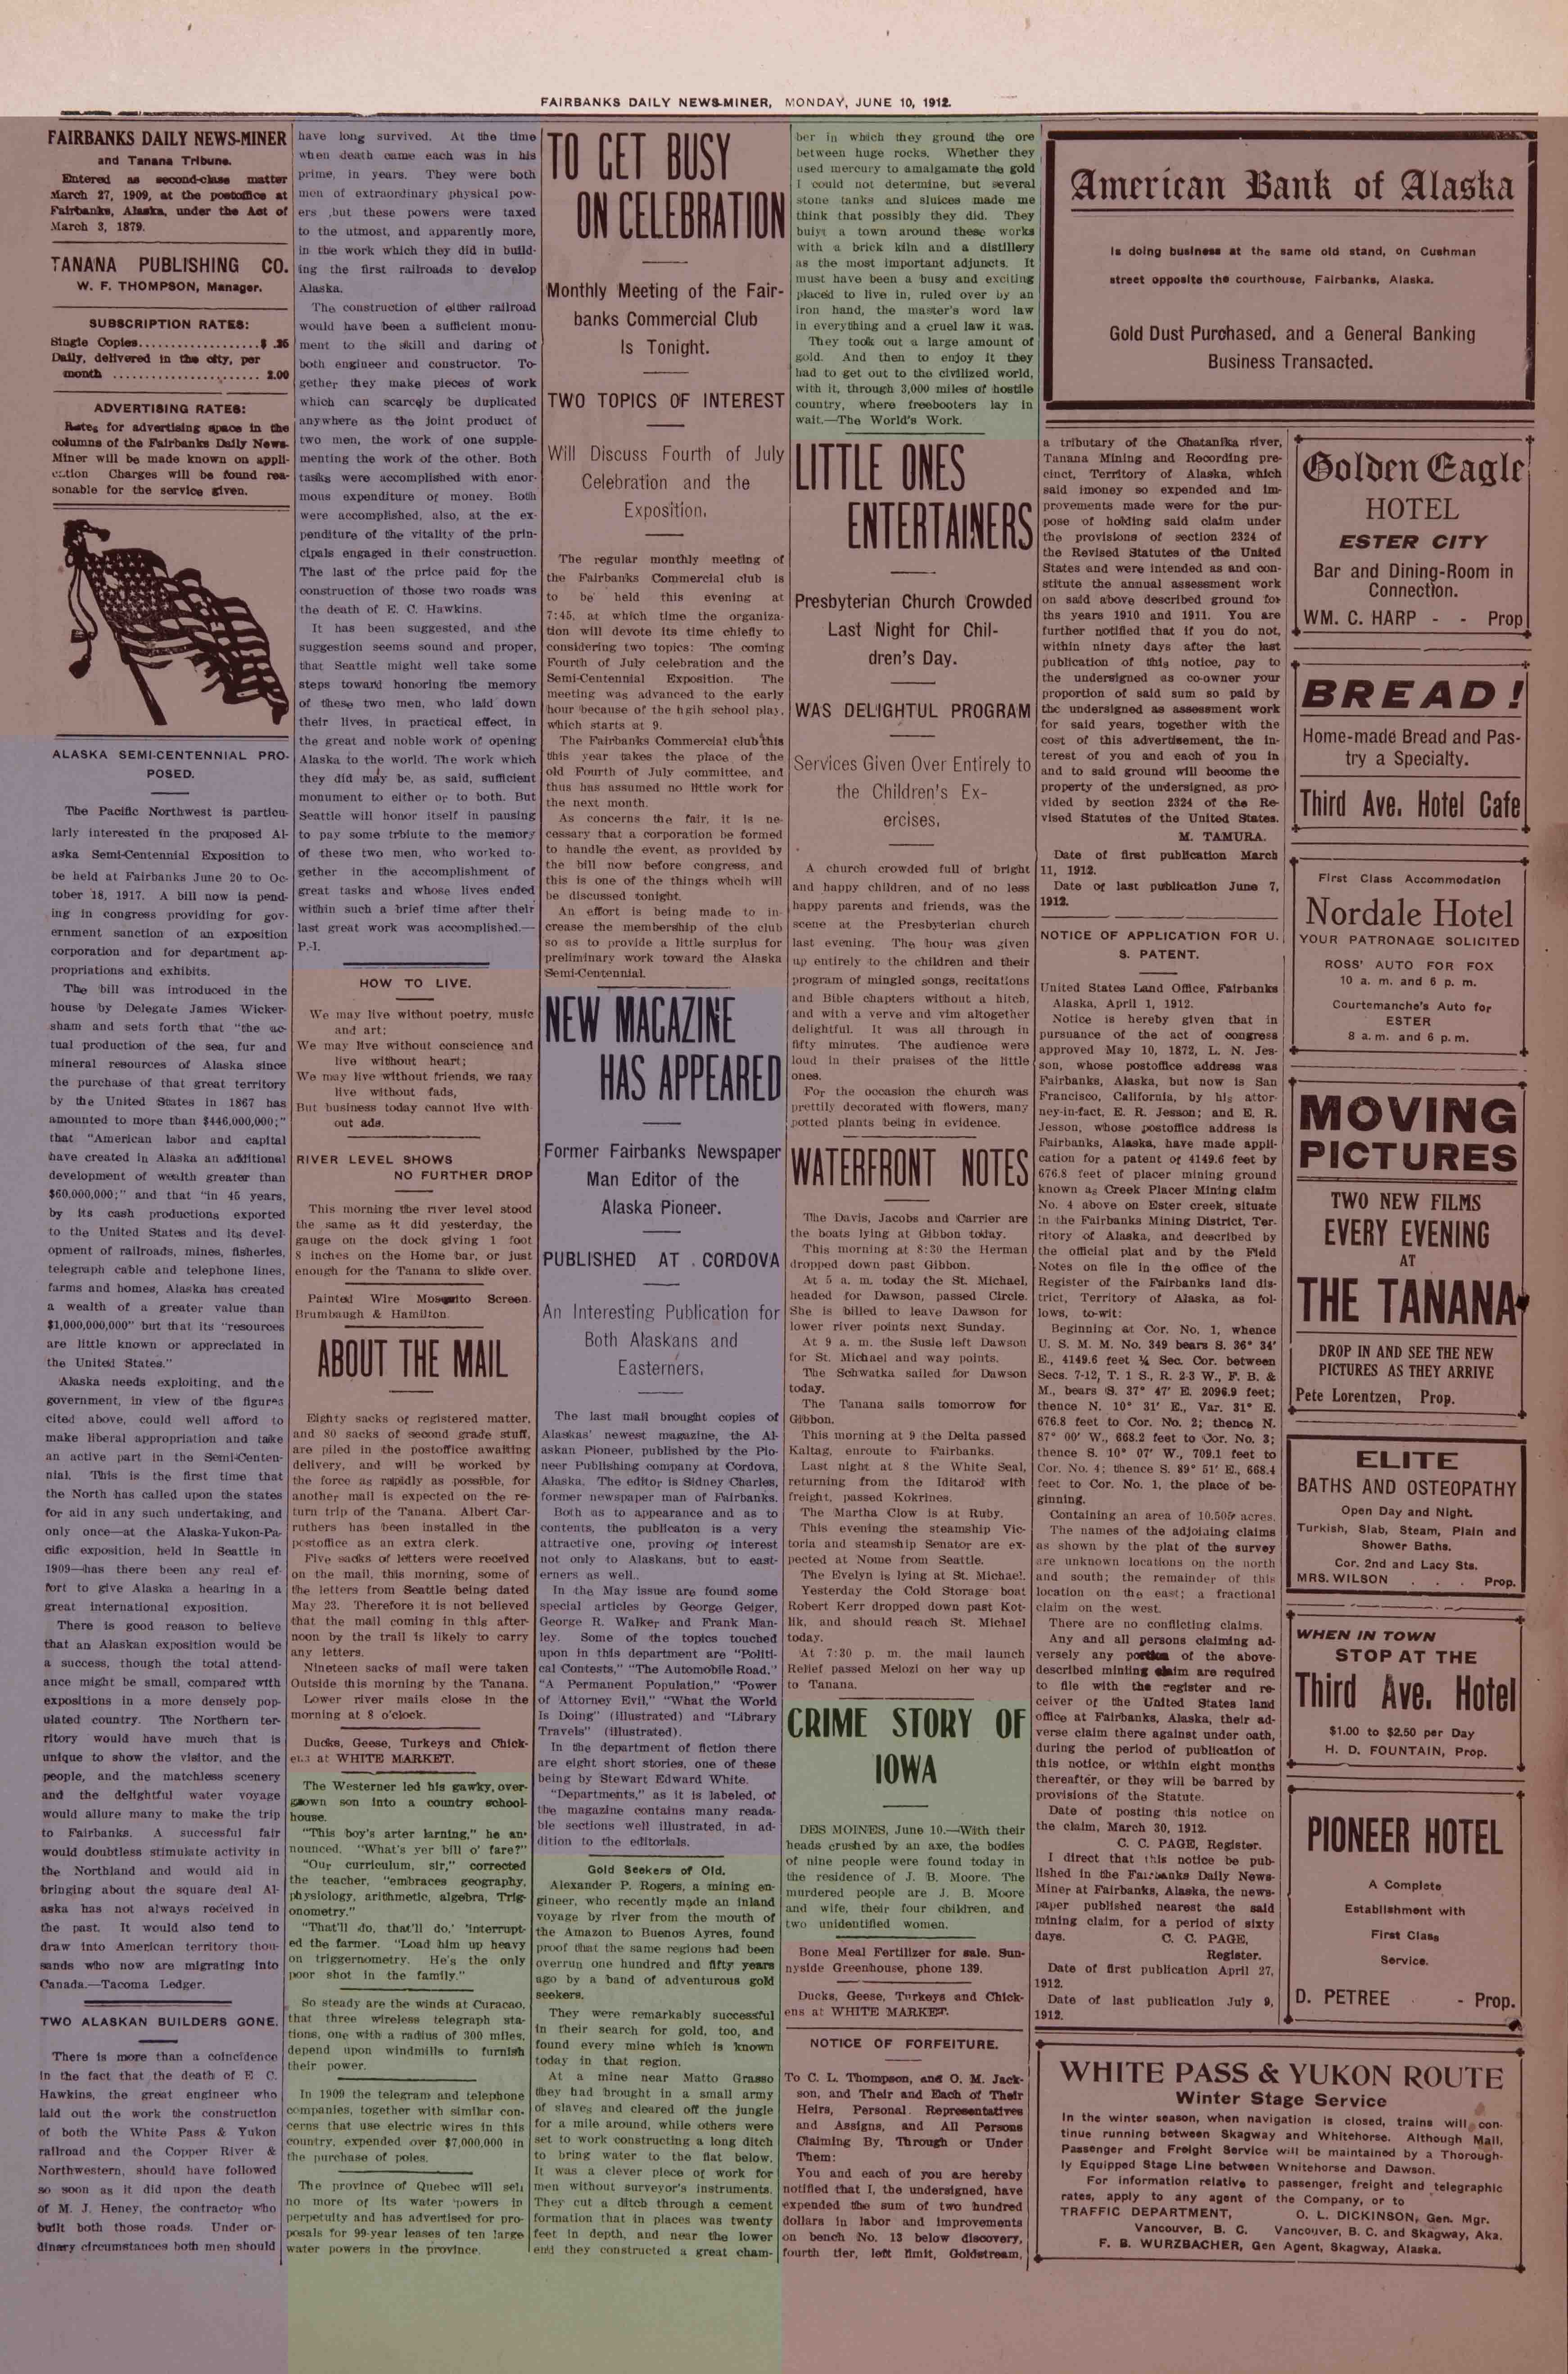 1912 June 10, Fairbanks Daily News-Miner (pg 2)